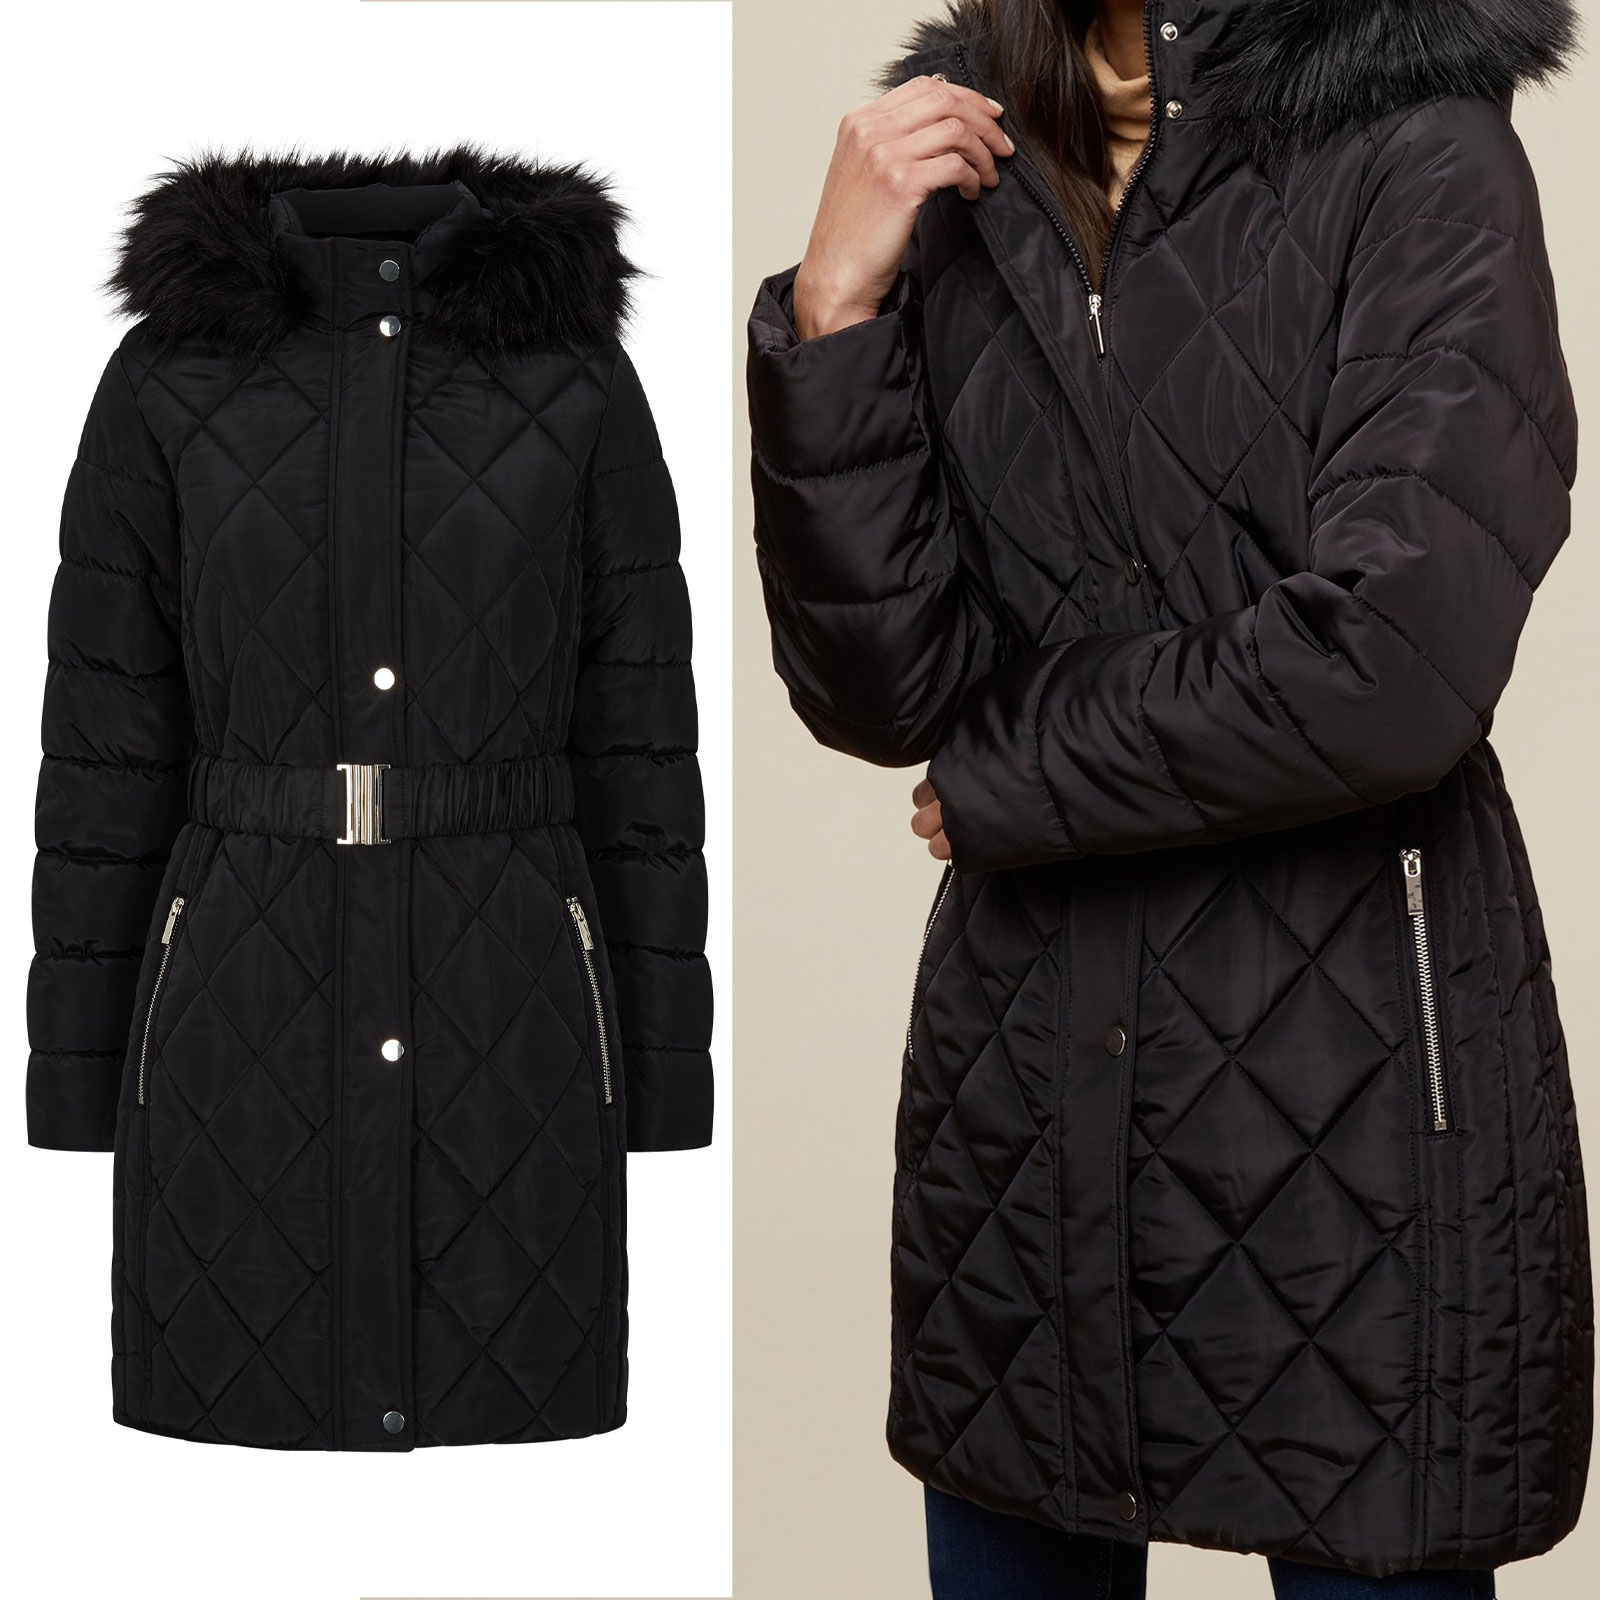 Long Black Padded Coat With Fur Hood ~ Winter Long Hooded Coat Ladies ...